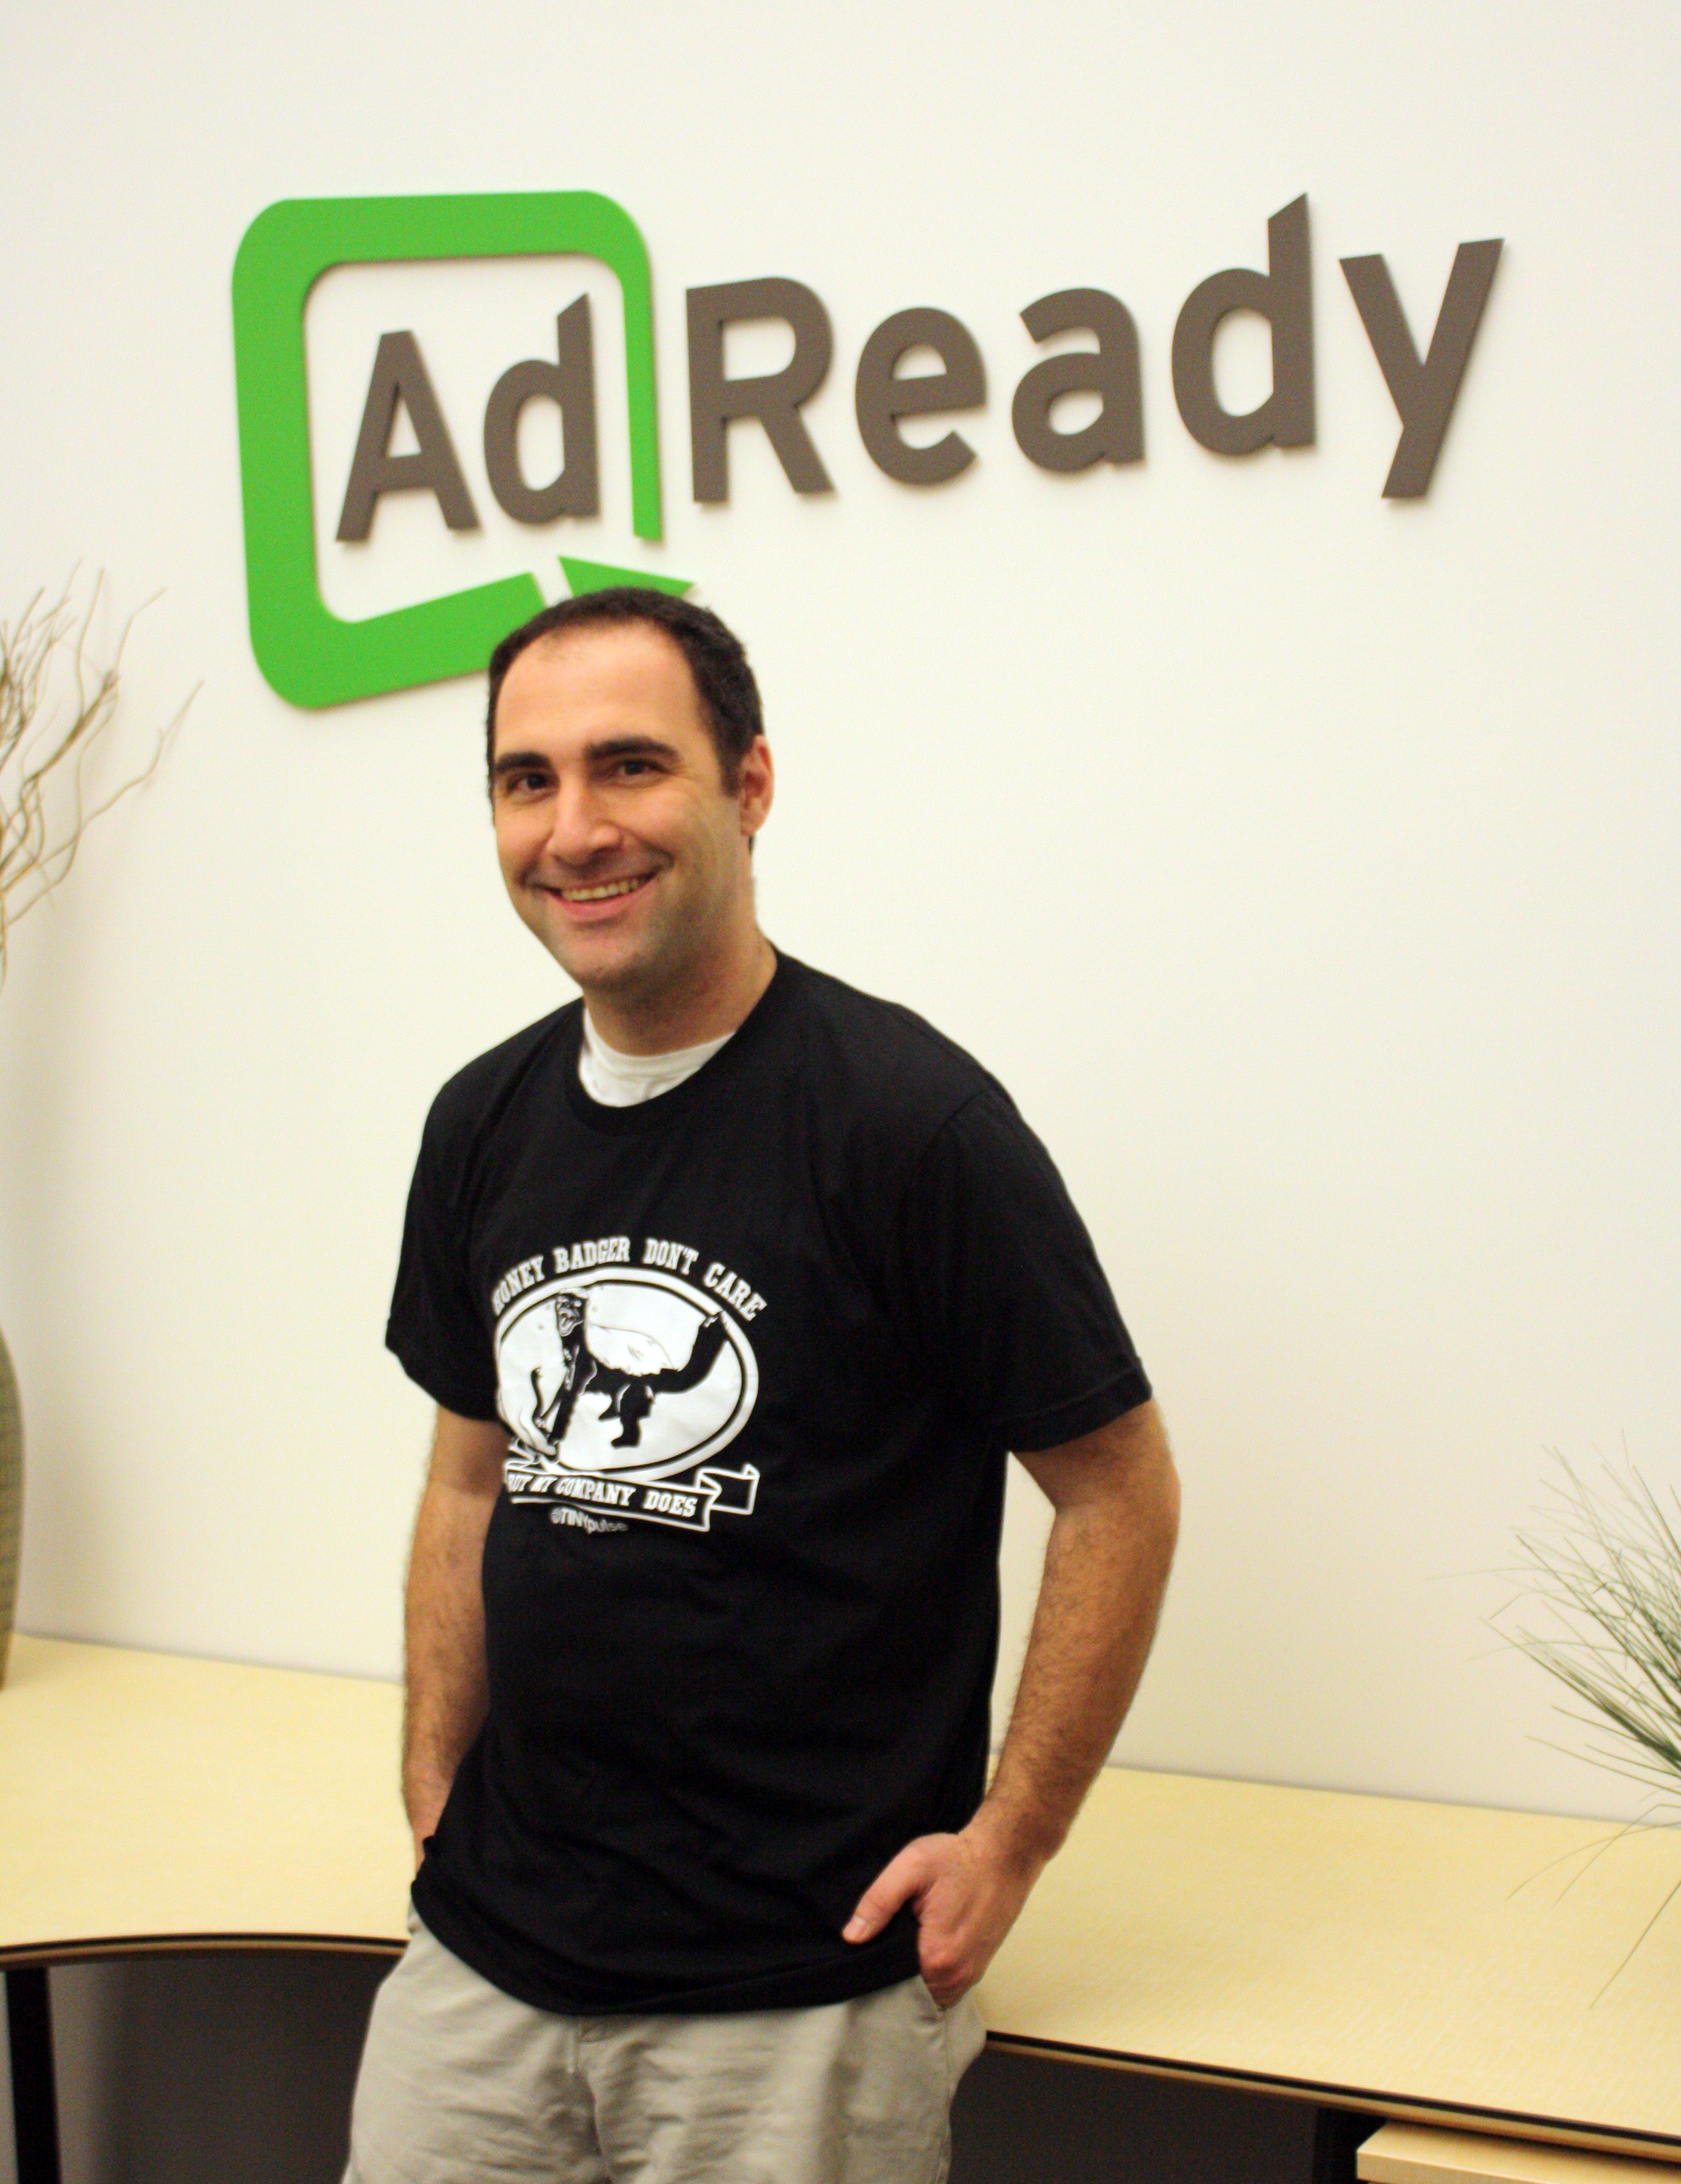 AdReady CEO Honey Badger TINYpulse shirt